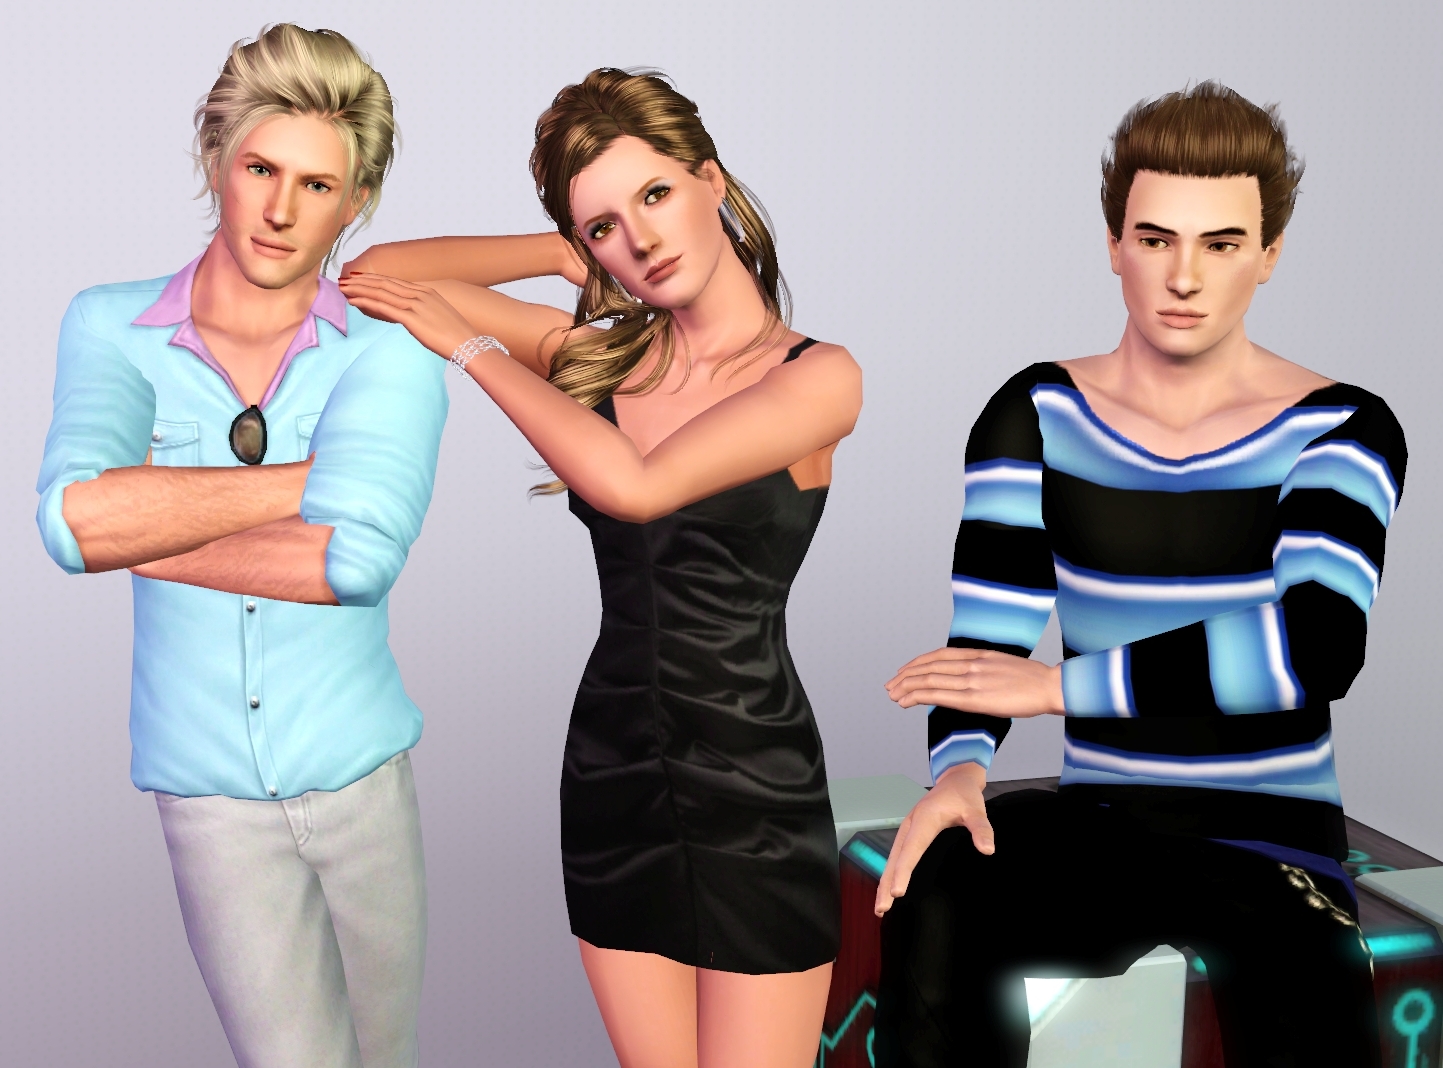 Sims 3 poses tumblr